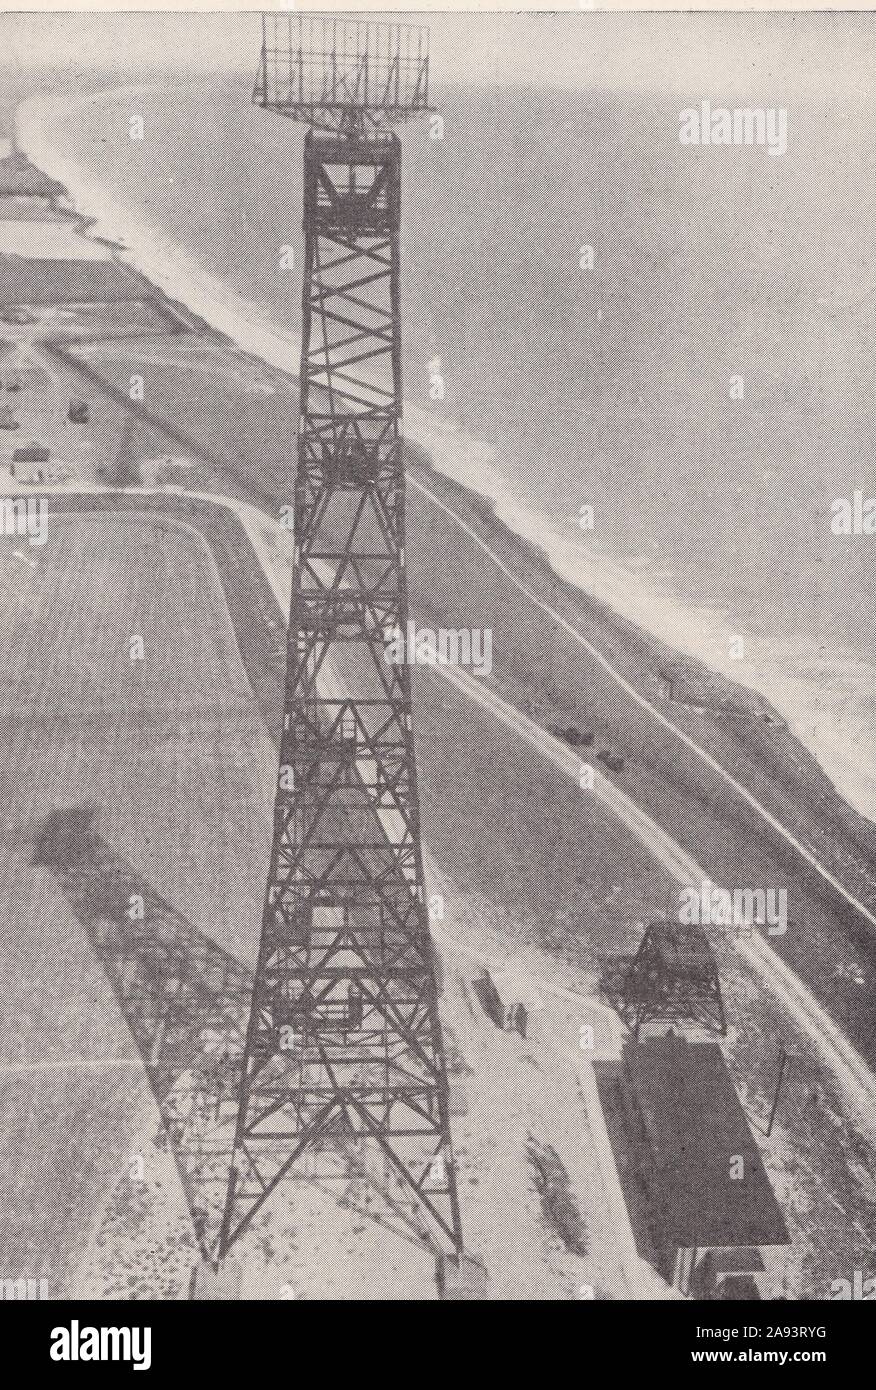 "Kette Startseite ' niedrige Station - Verwendet, Um zu erkennen und tief fliegende Flugzeuge im WW2 1940er Bericht. Stockfoto